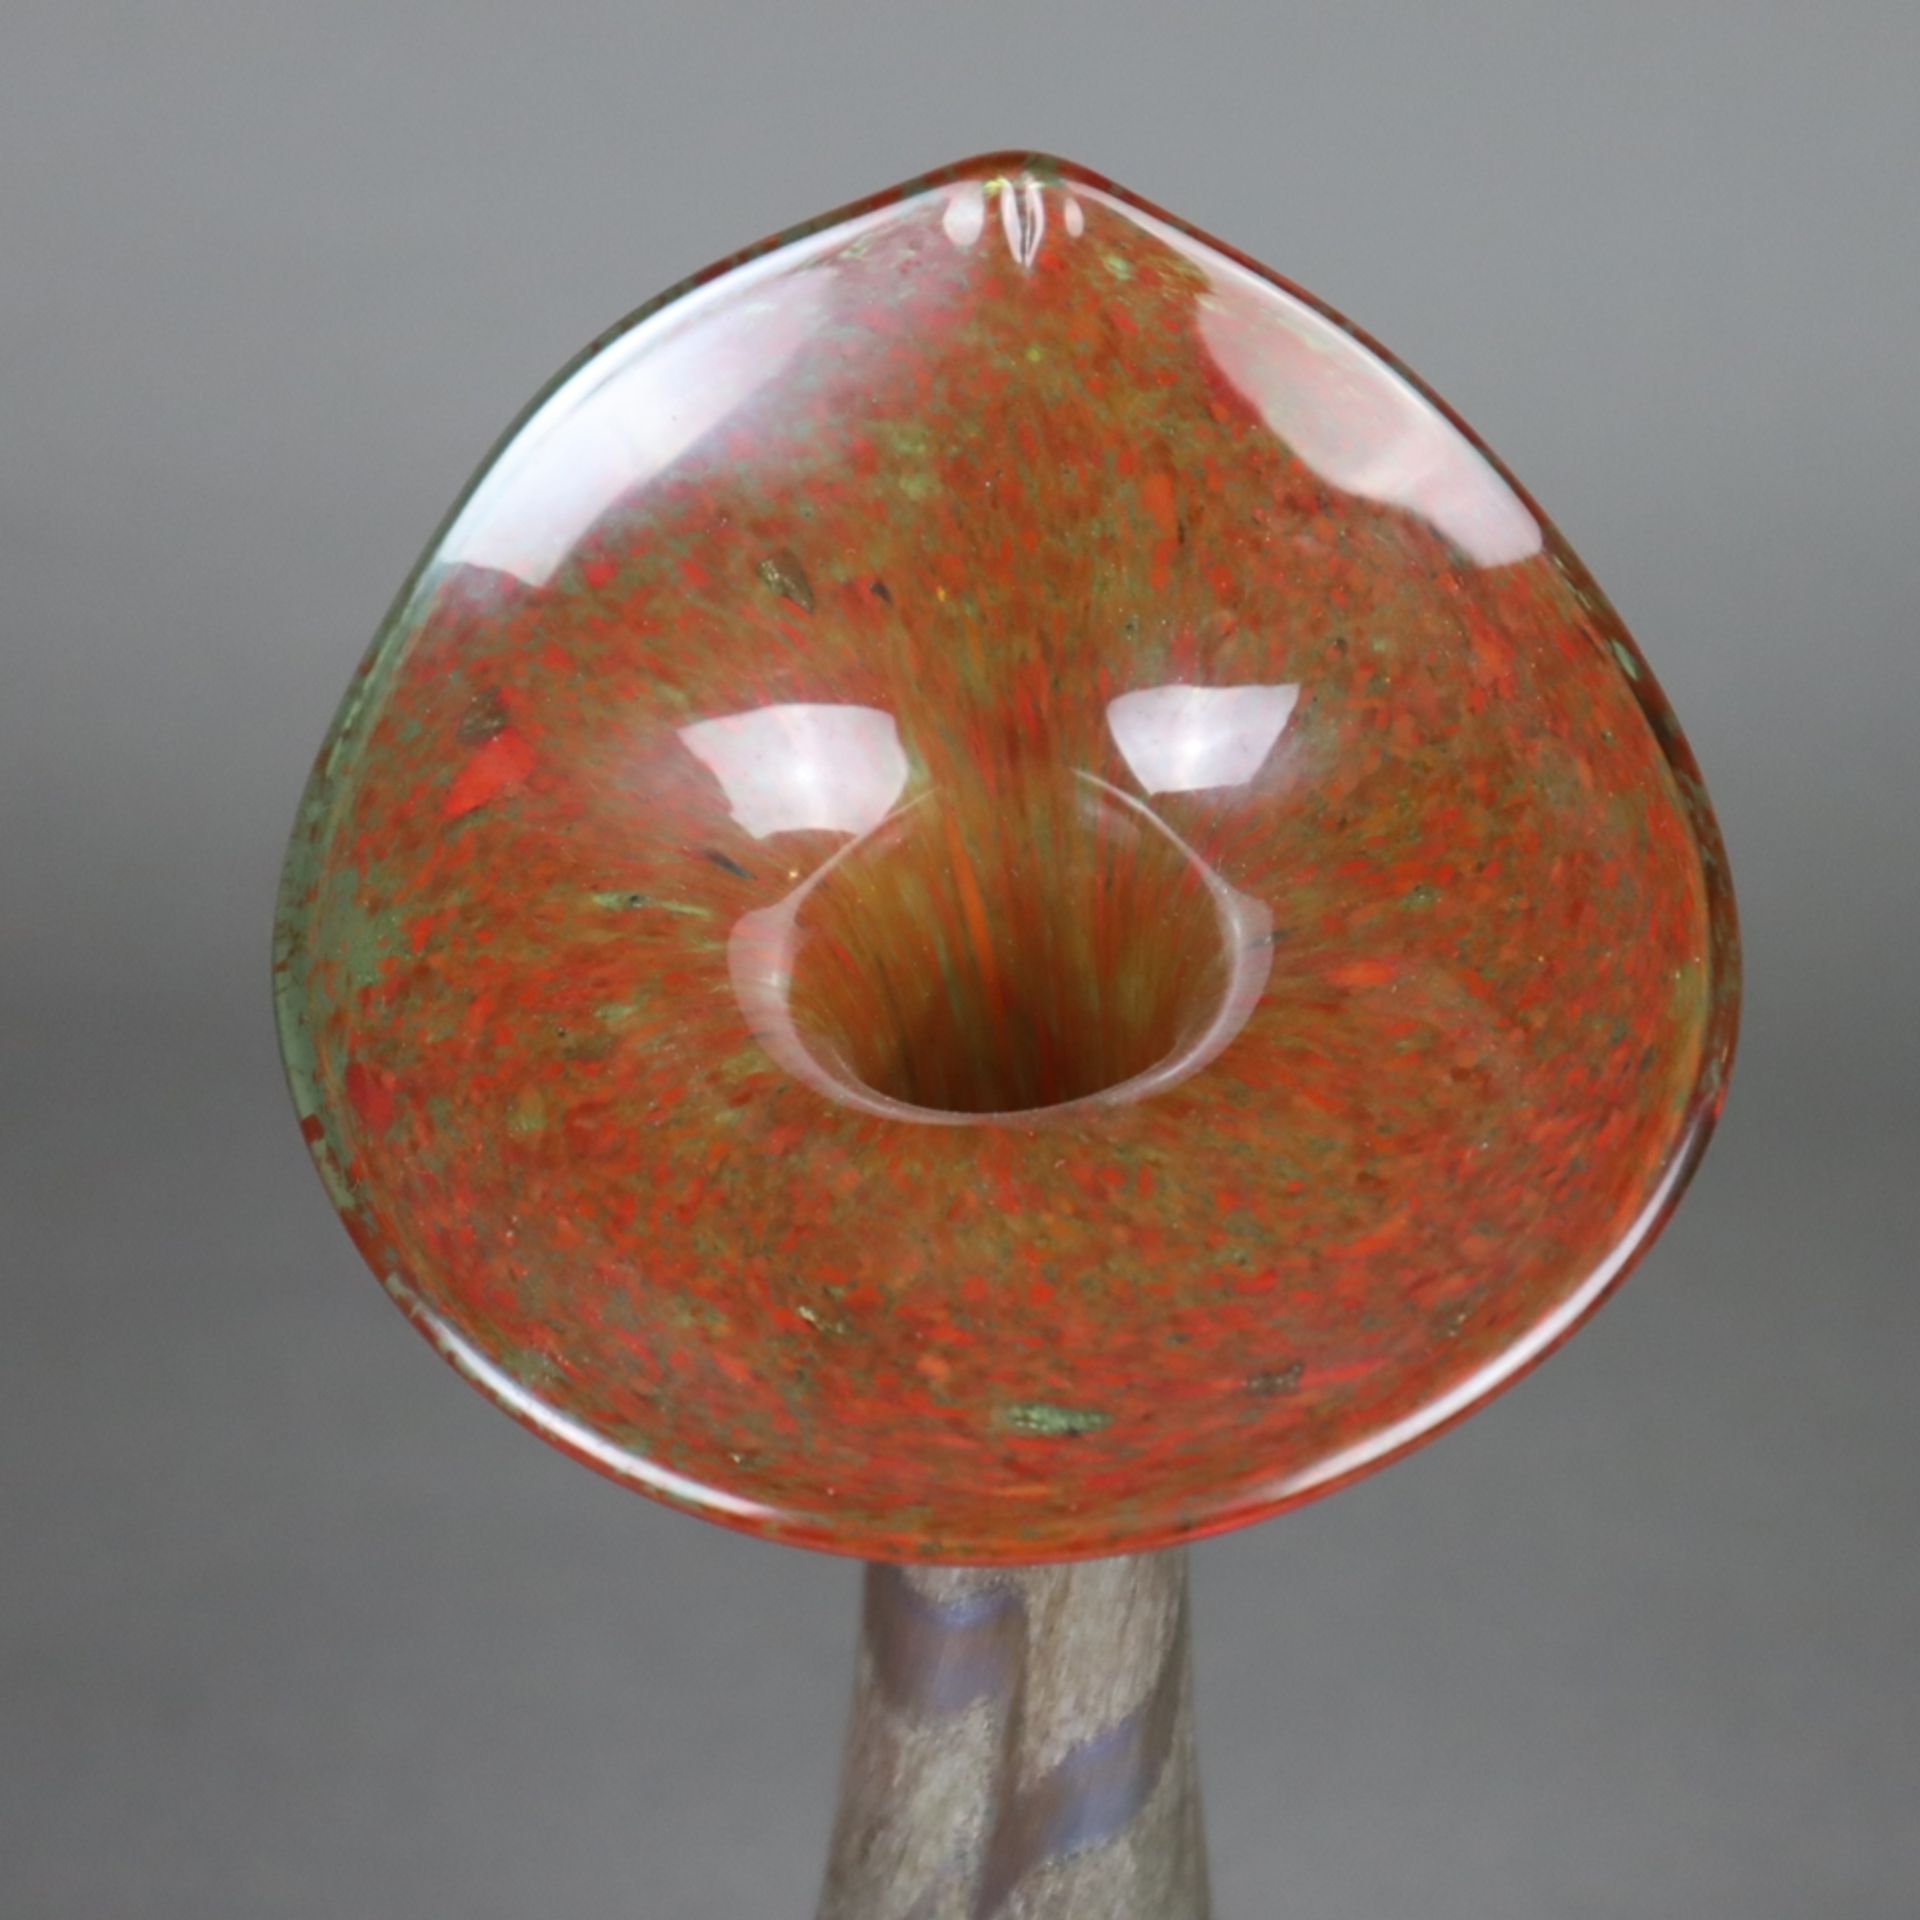 Jugendstil-Vase - irisiertes Glas mit farbigen Pulvereinschmelzungen, gebauchter Korpus mit langem - Bild 2 aus 8